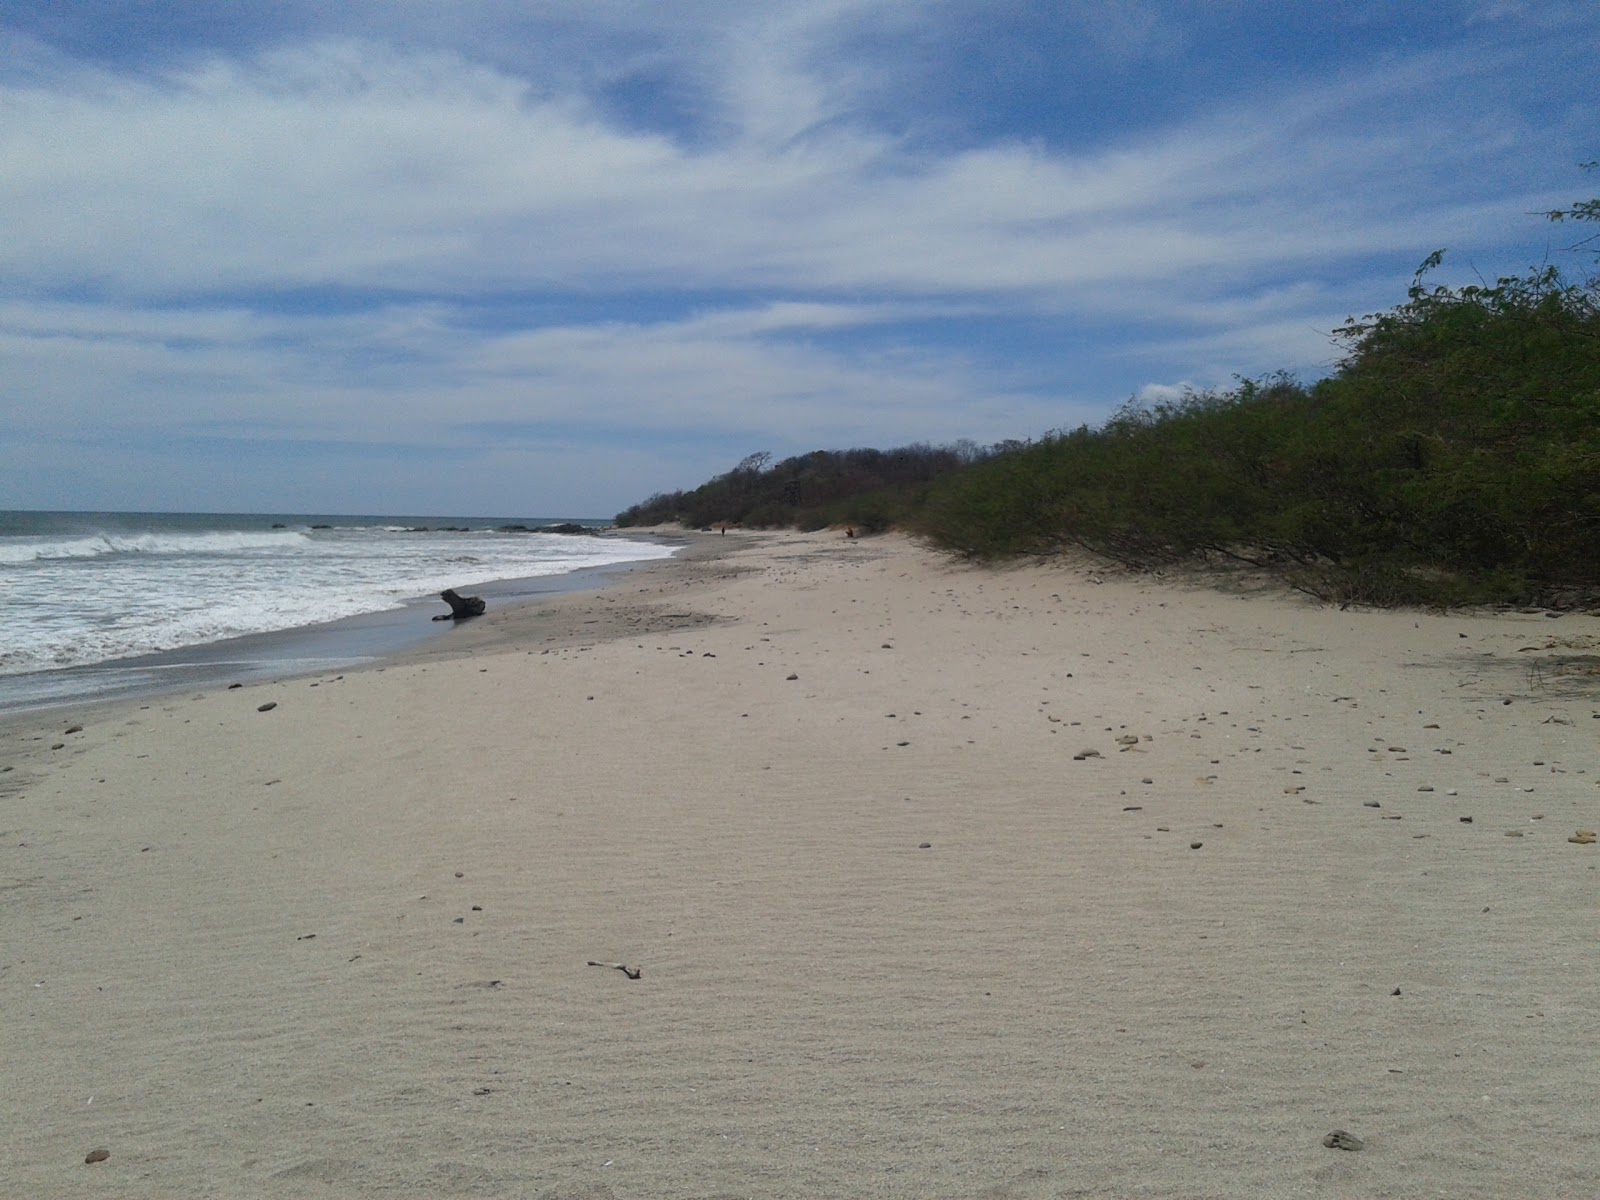 Zdjęcie Playa Chacocente - popularne miejsce wśród znawców relaksu